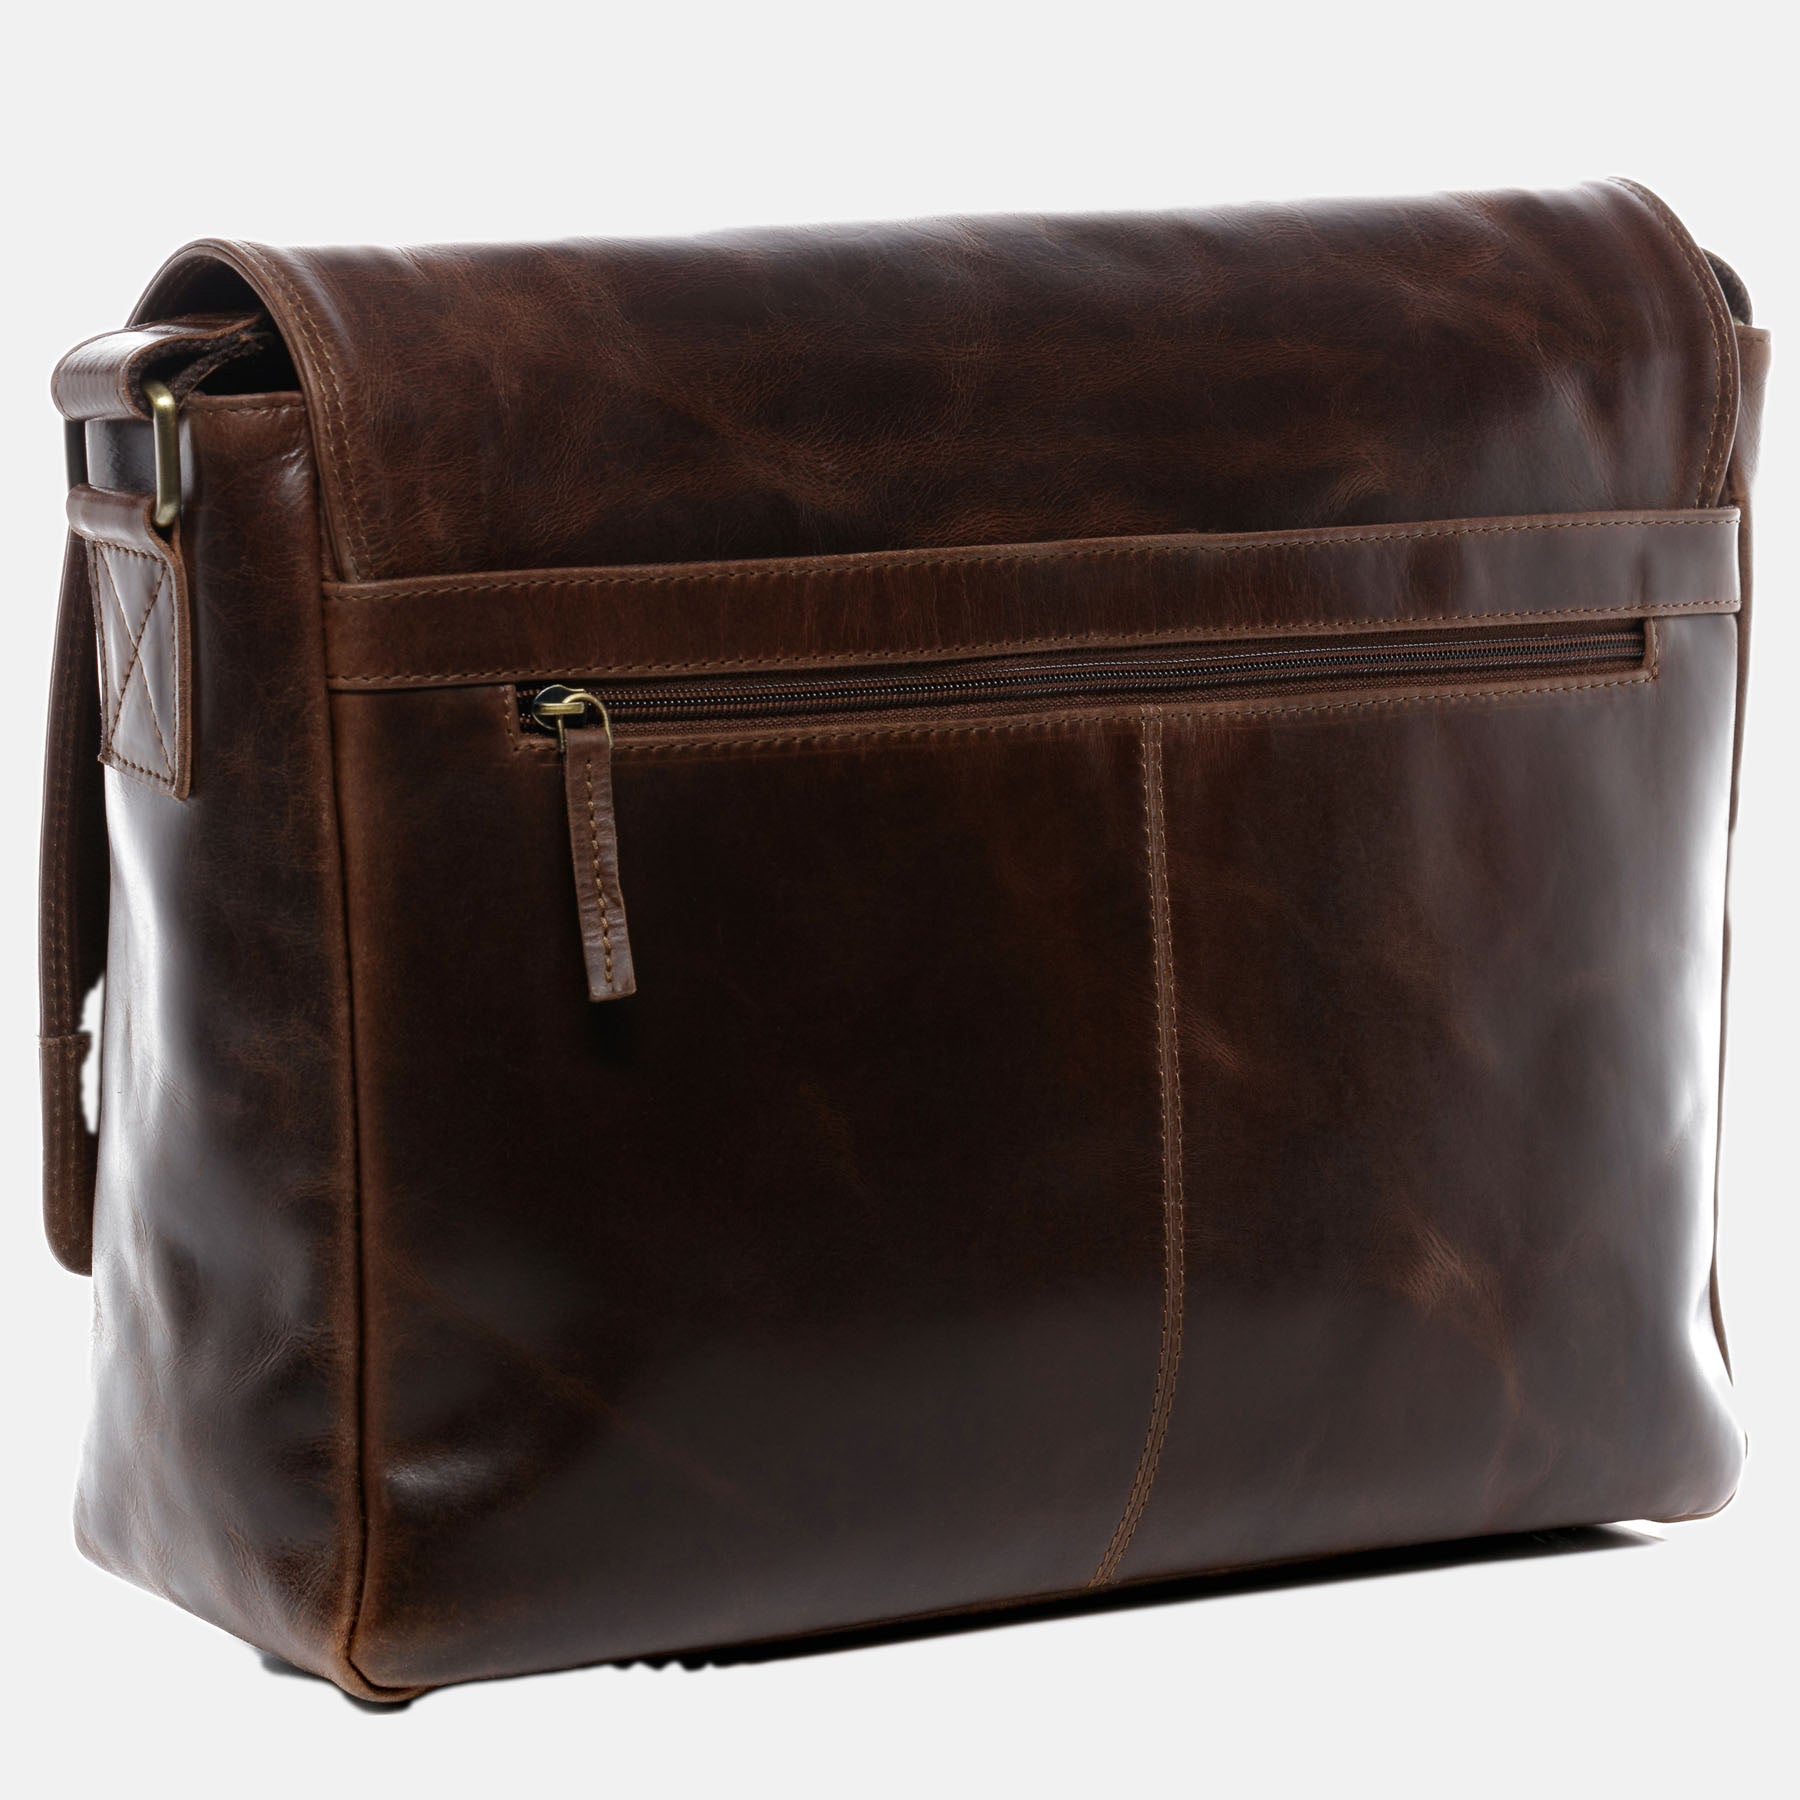 Messenger Bag SPENCER natural leather brown-cognac